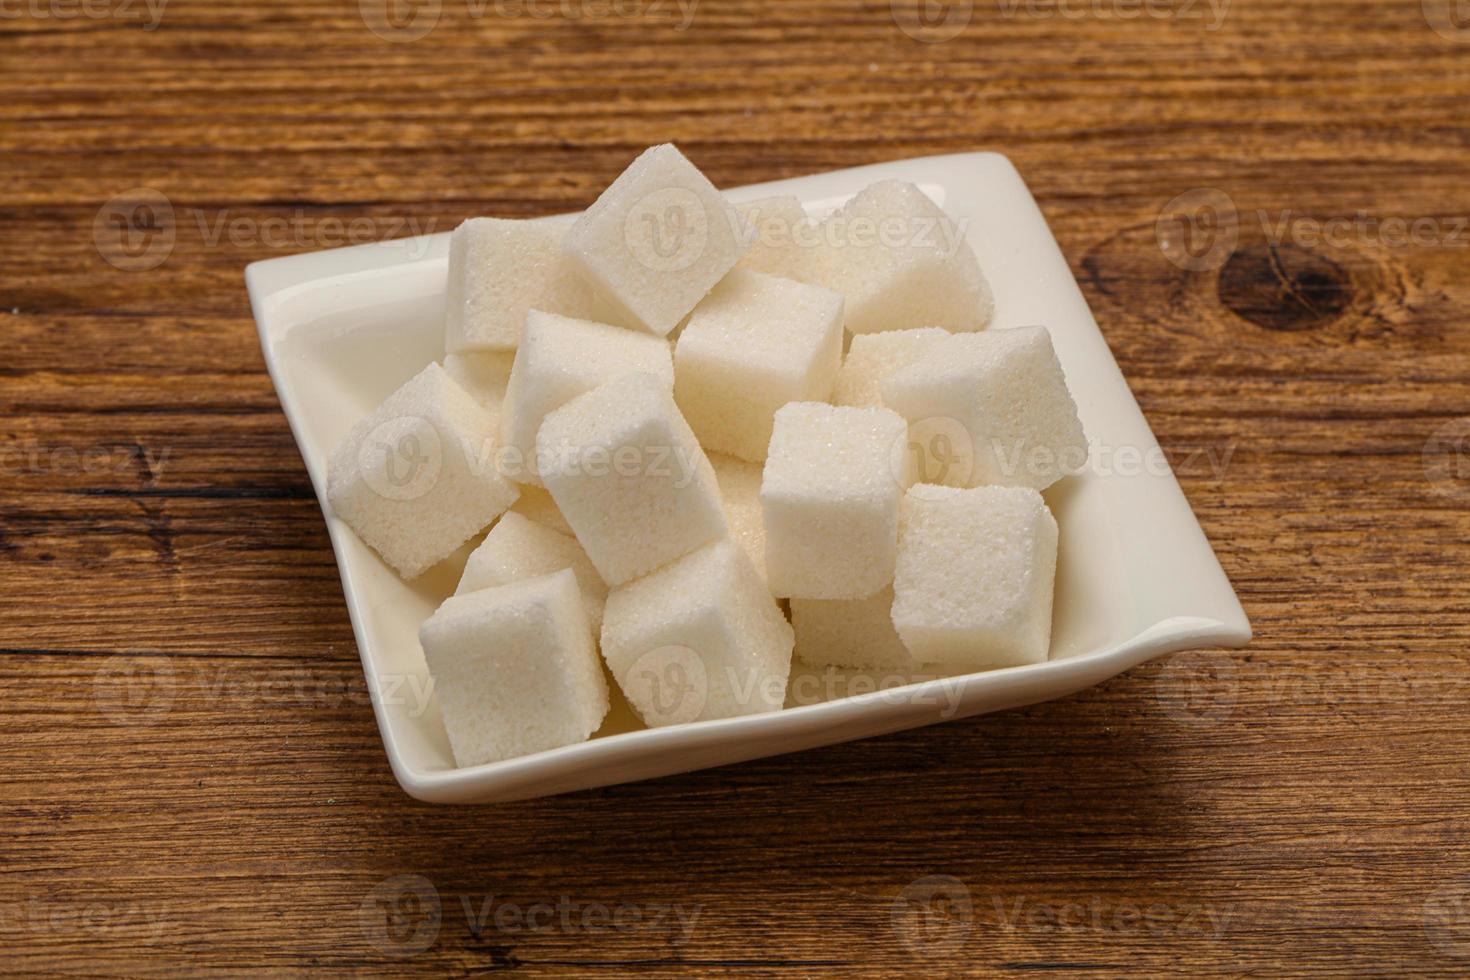 Cubos de azúcar blanco refinado en el bol foto